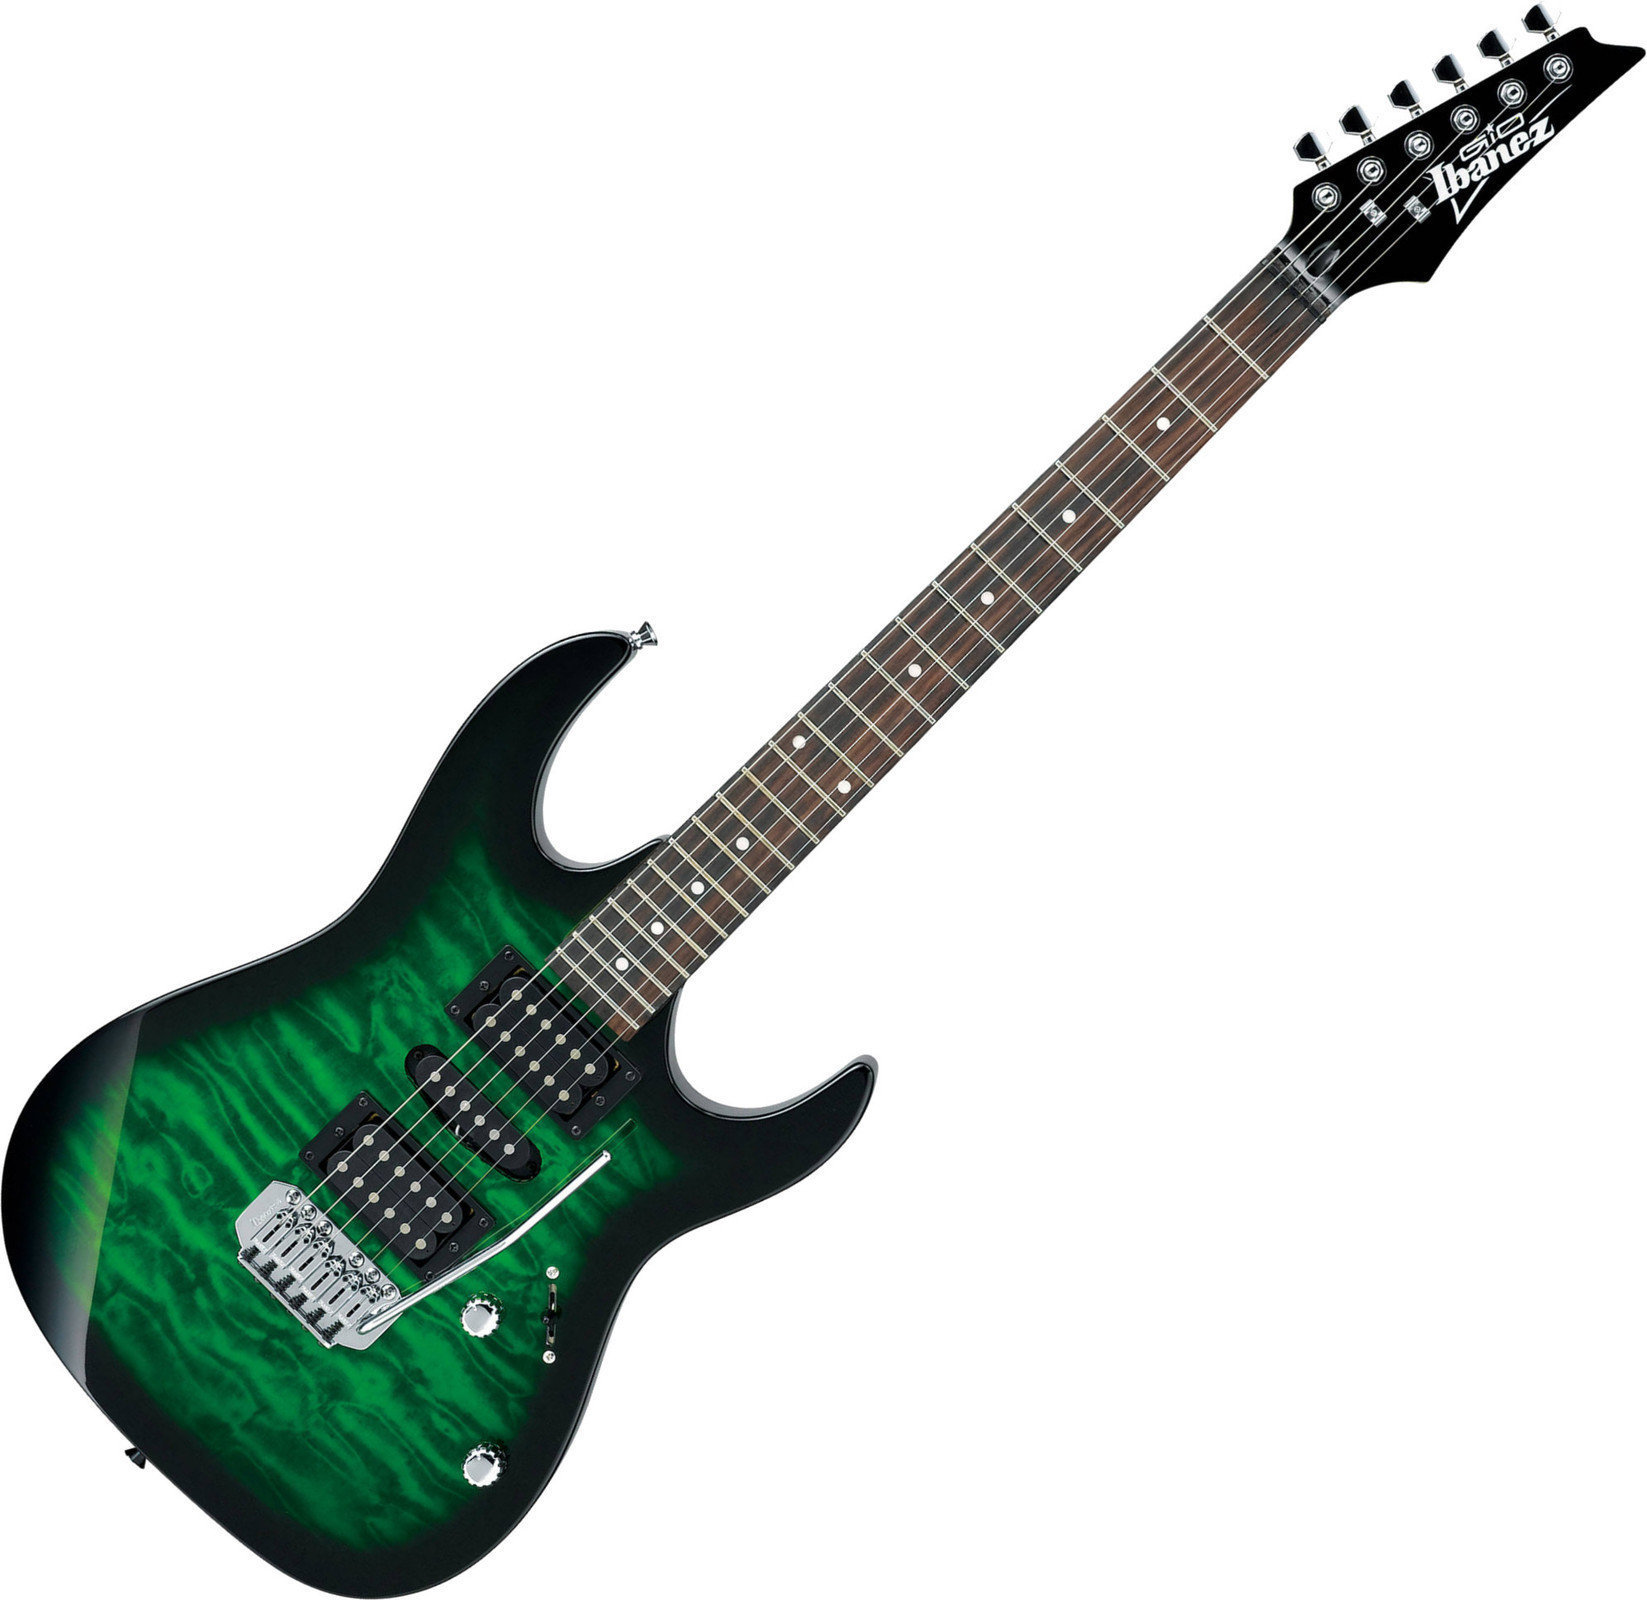 Ηλεκτρική Κιθάρα Ibanez GRX70QA Transparent Emerald Burst